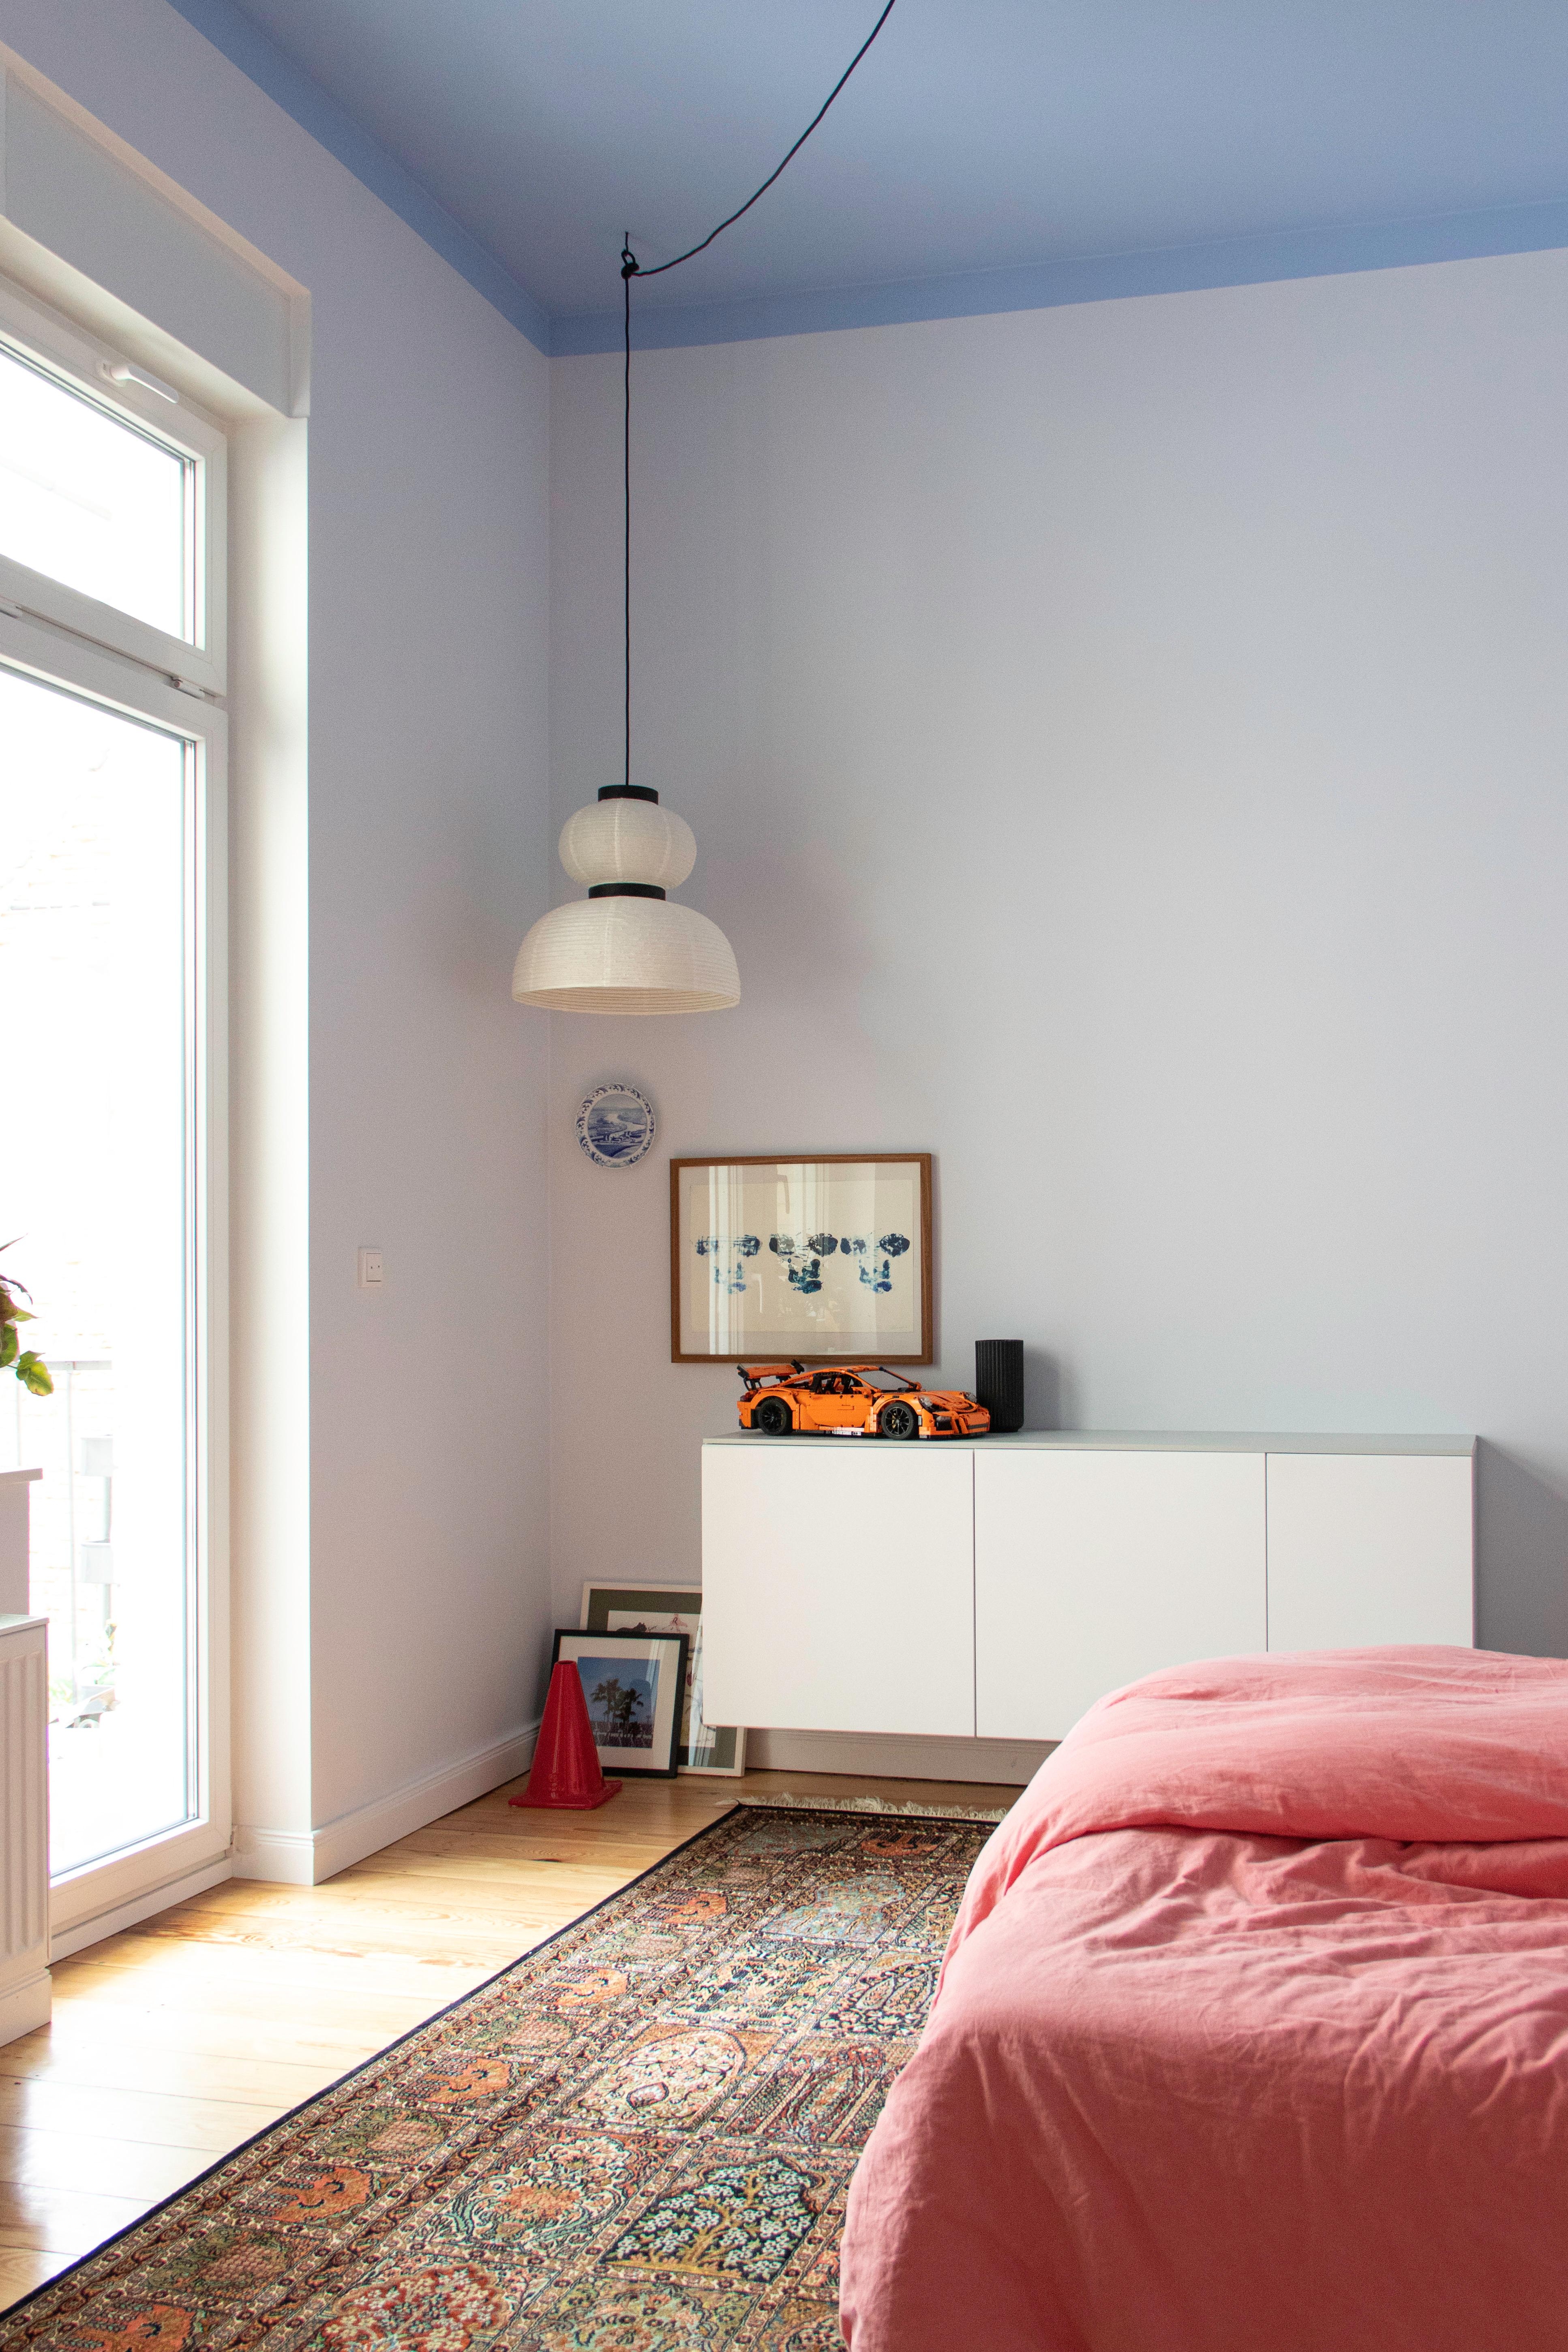 #Schlafzimmer #Blau #Deckenfarbe #Bett #Teppich #Colorful #Couchliebt #Couchstyle #Farbenfroh #Pastell